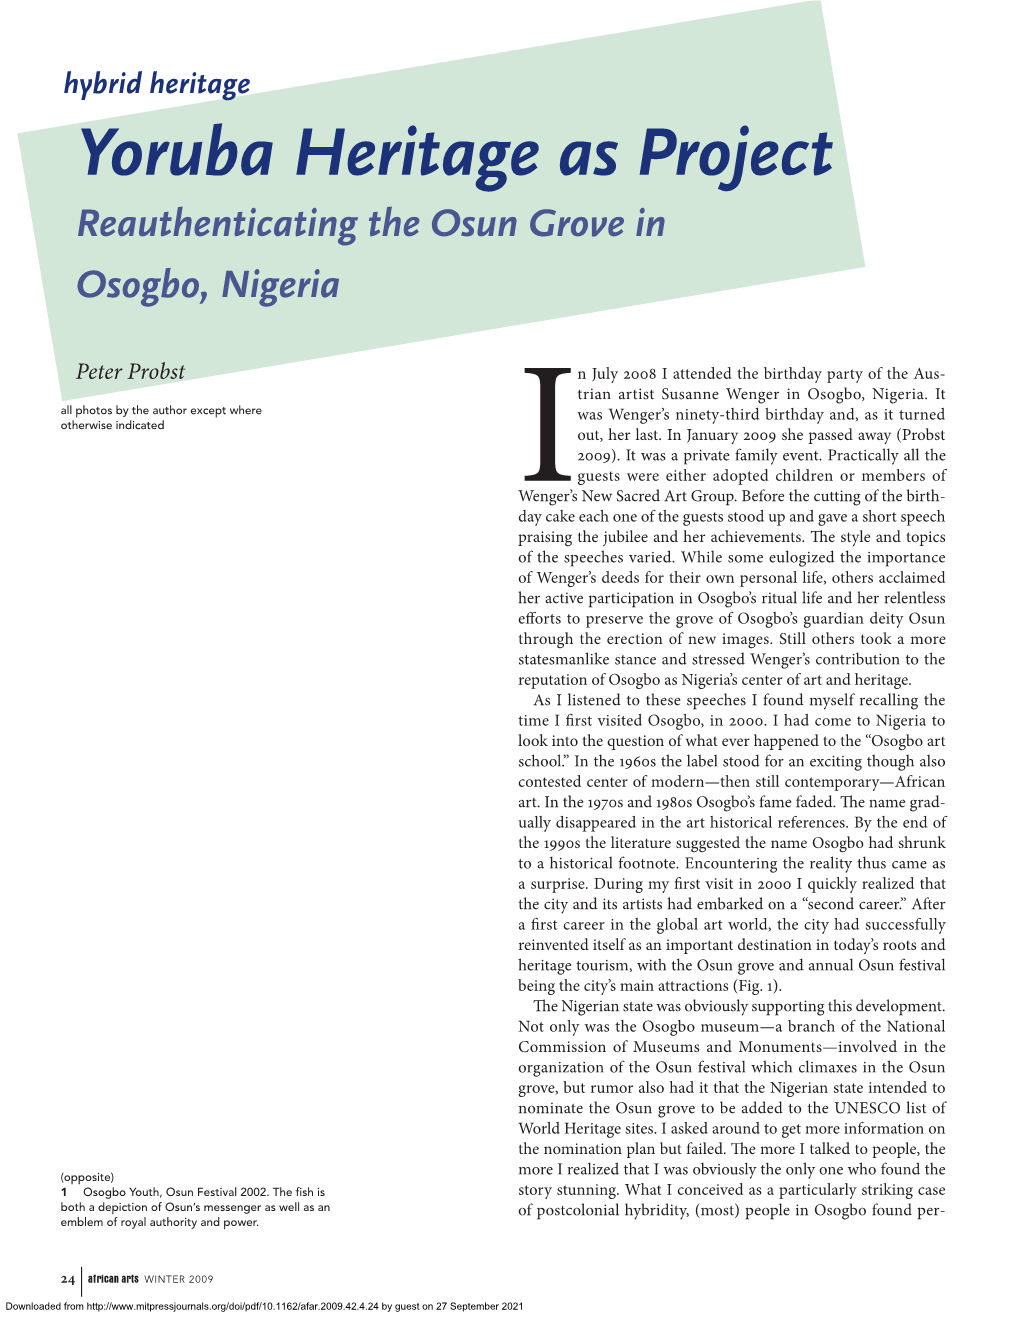 Yoruba Heritage As Project Reauthenticating the Osun Grove in Osogbo, Nigeria